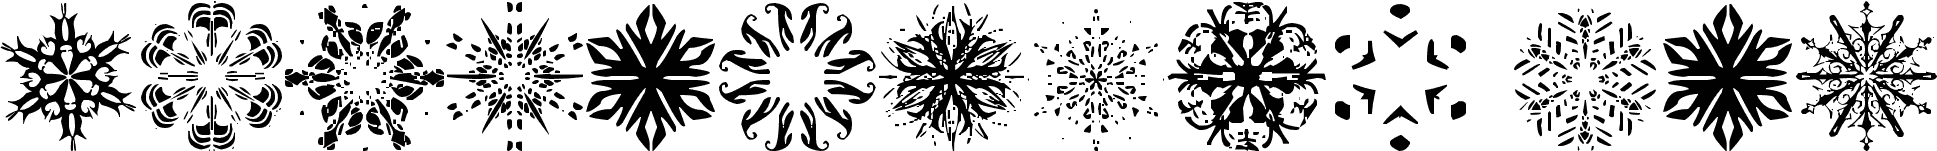 Snowflakes tfb font | Fonts2u.com